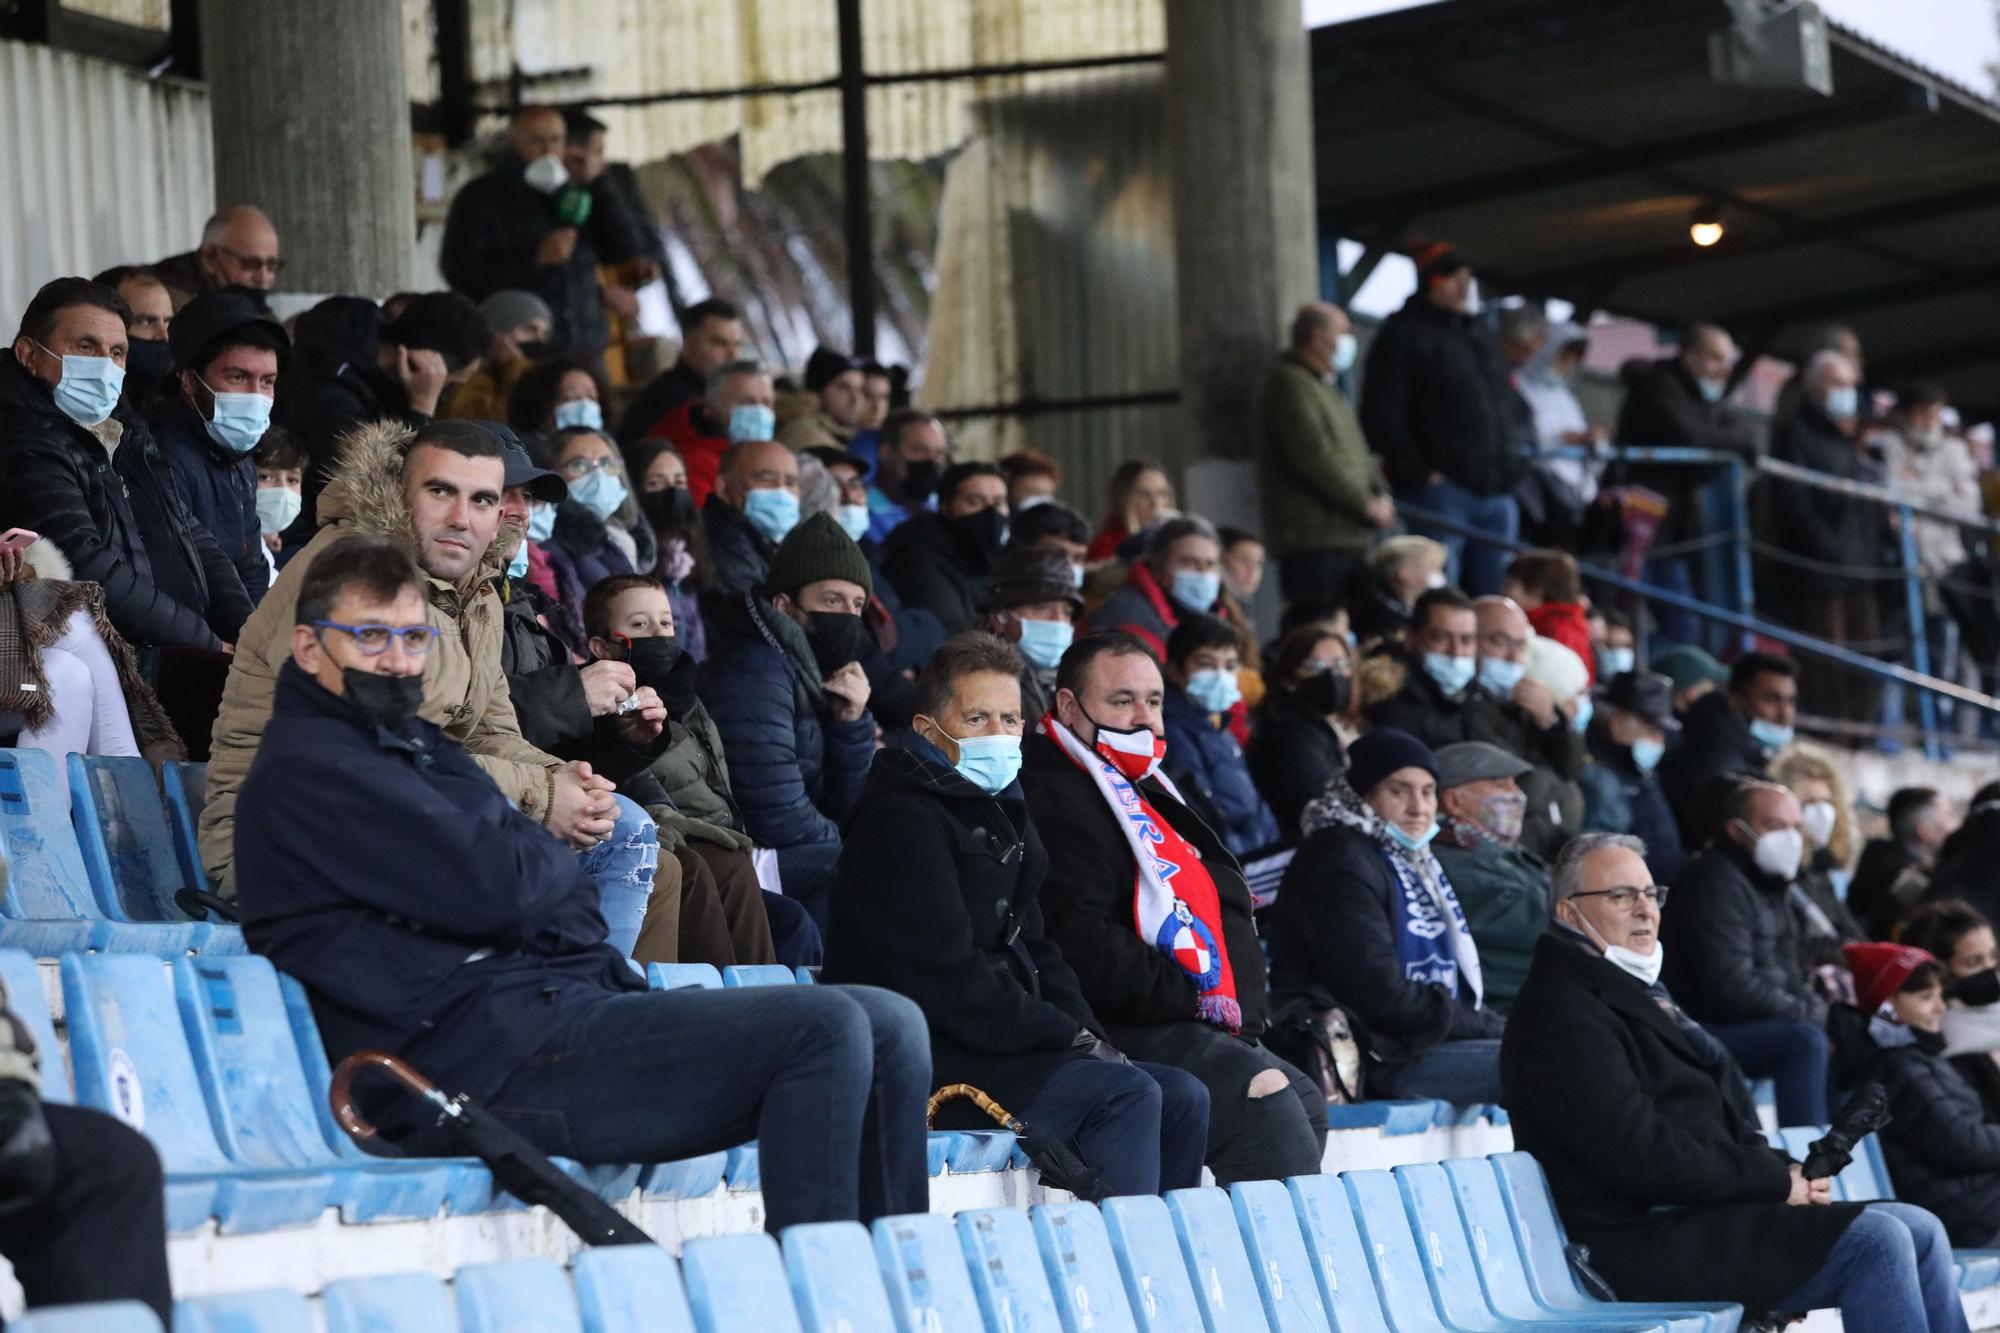 Las imágenes del partido de ida entre el Marino y el Llanera en Luanco (1-0)